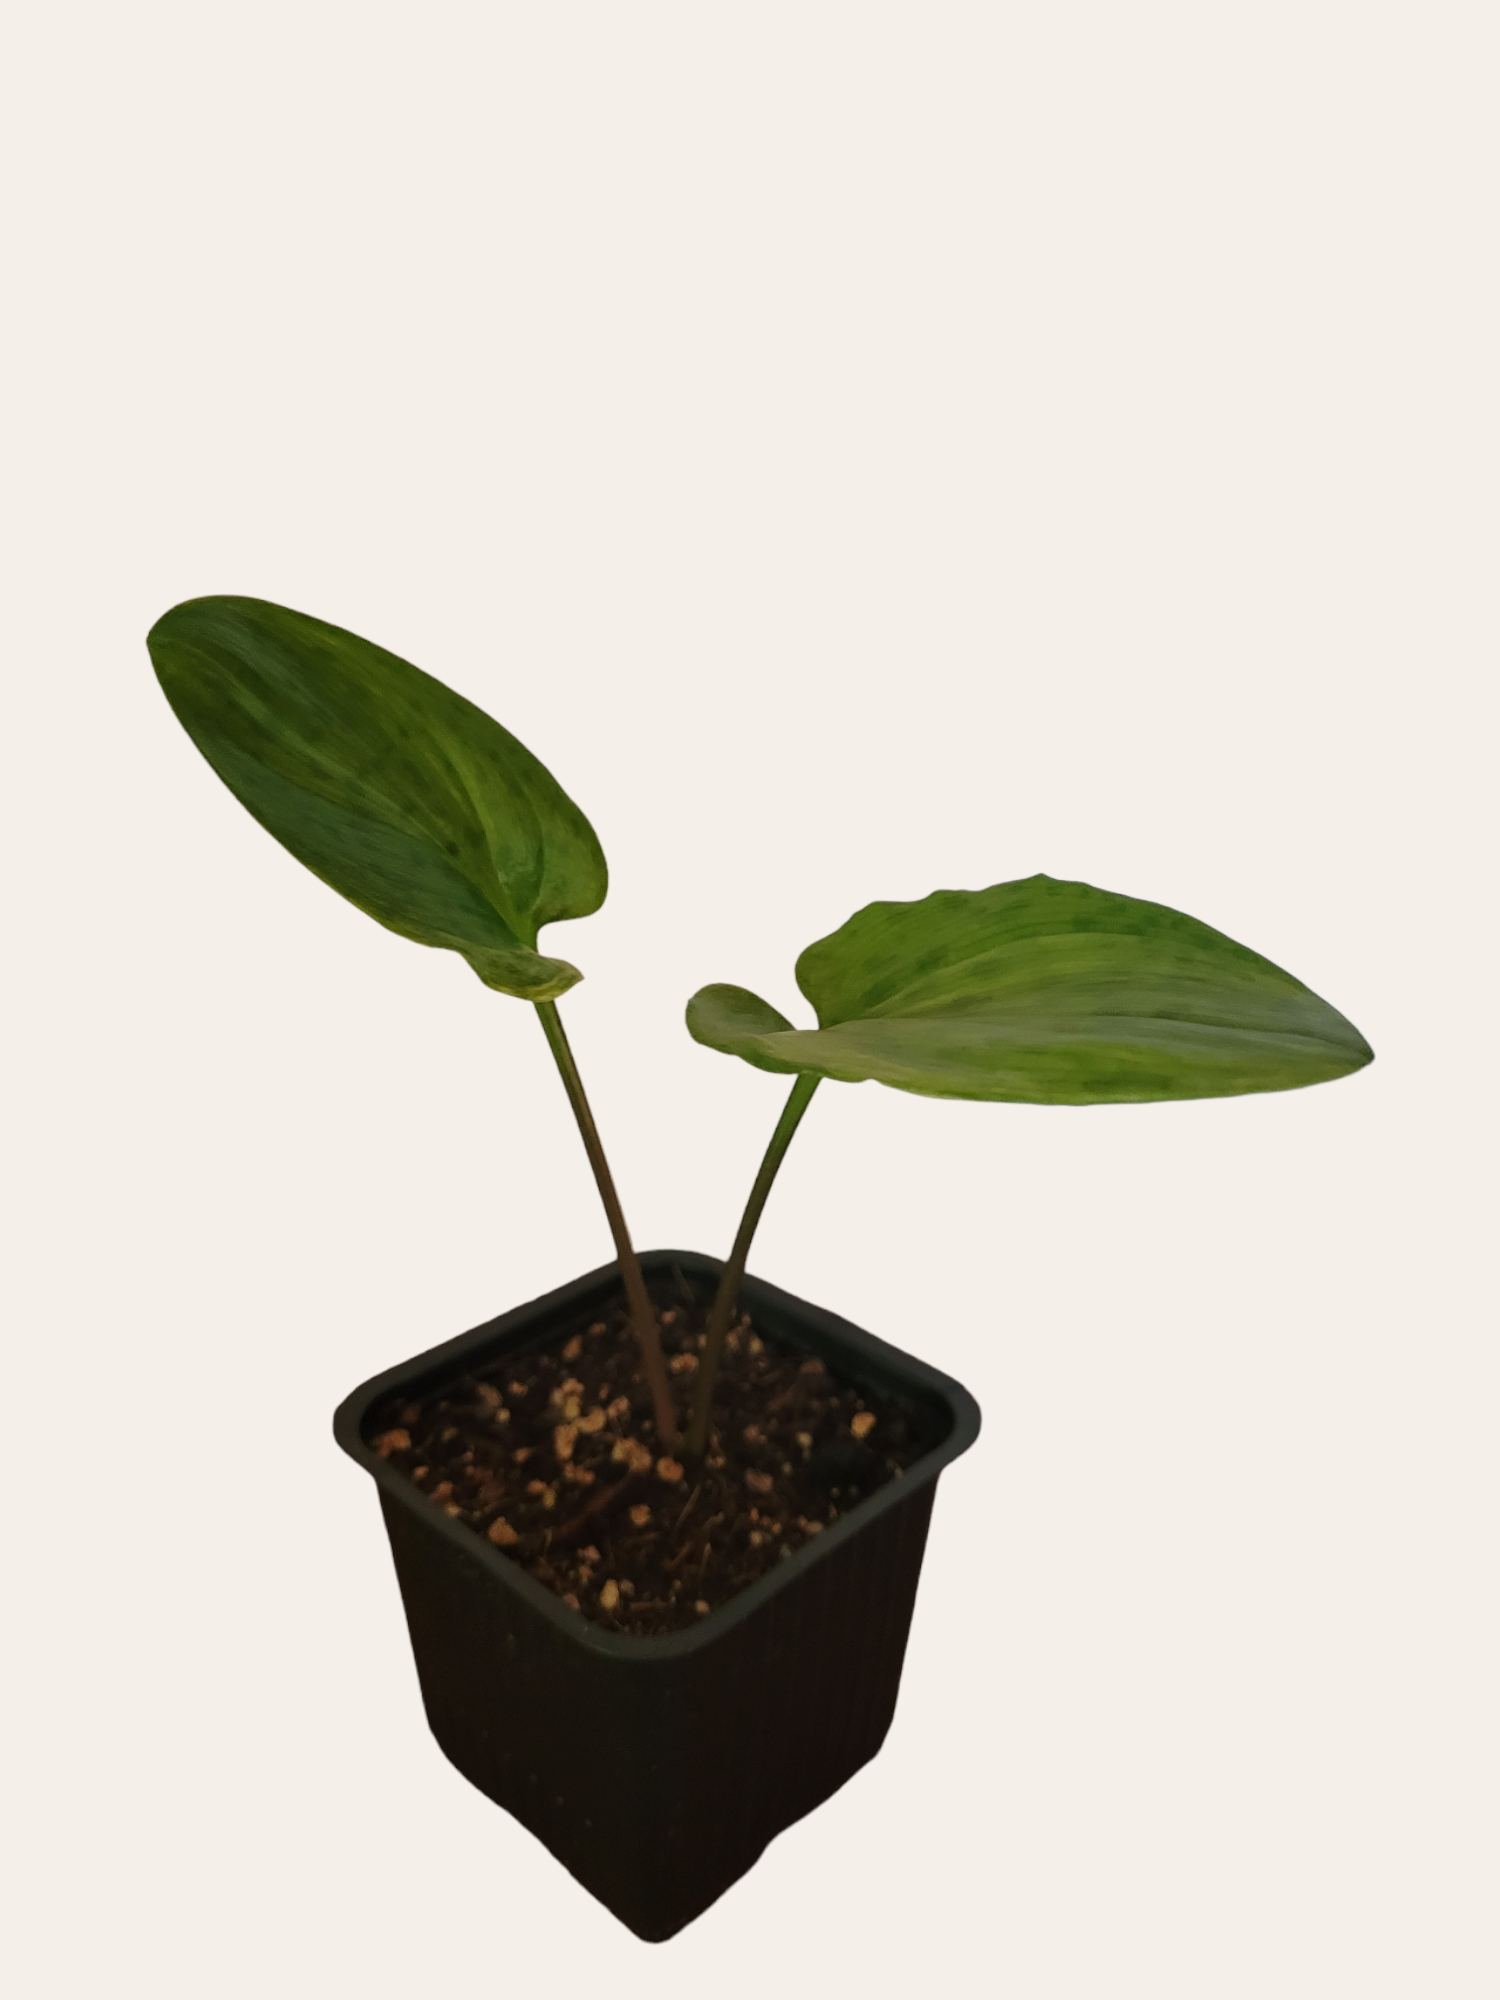 Ledebouria maculata variegata